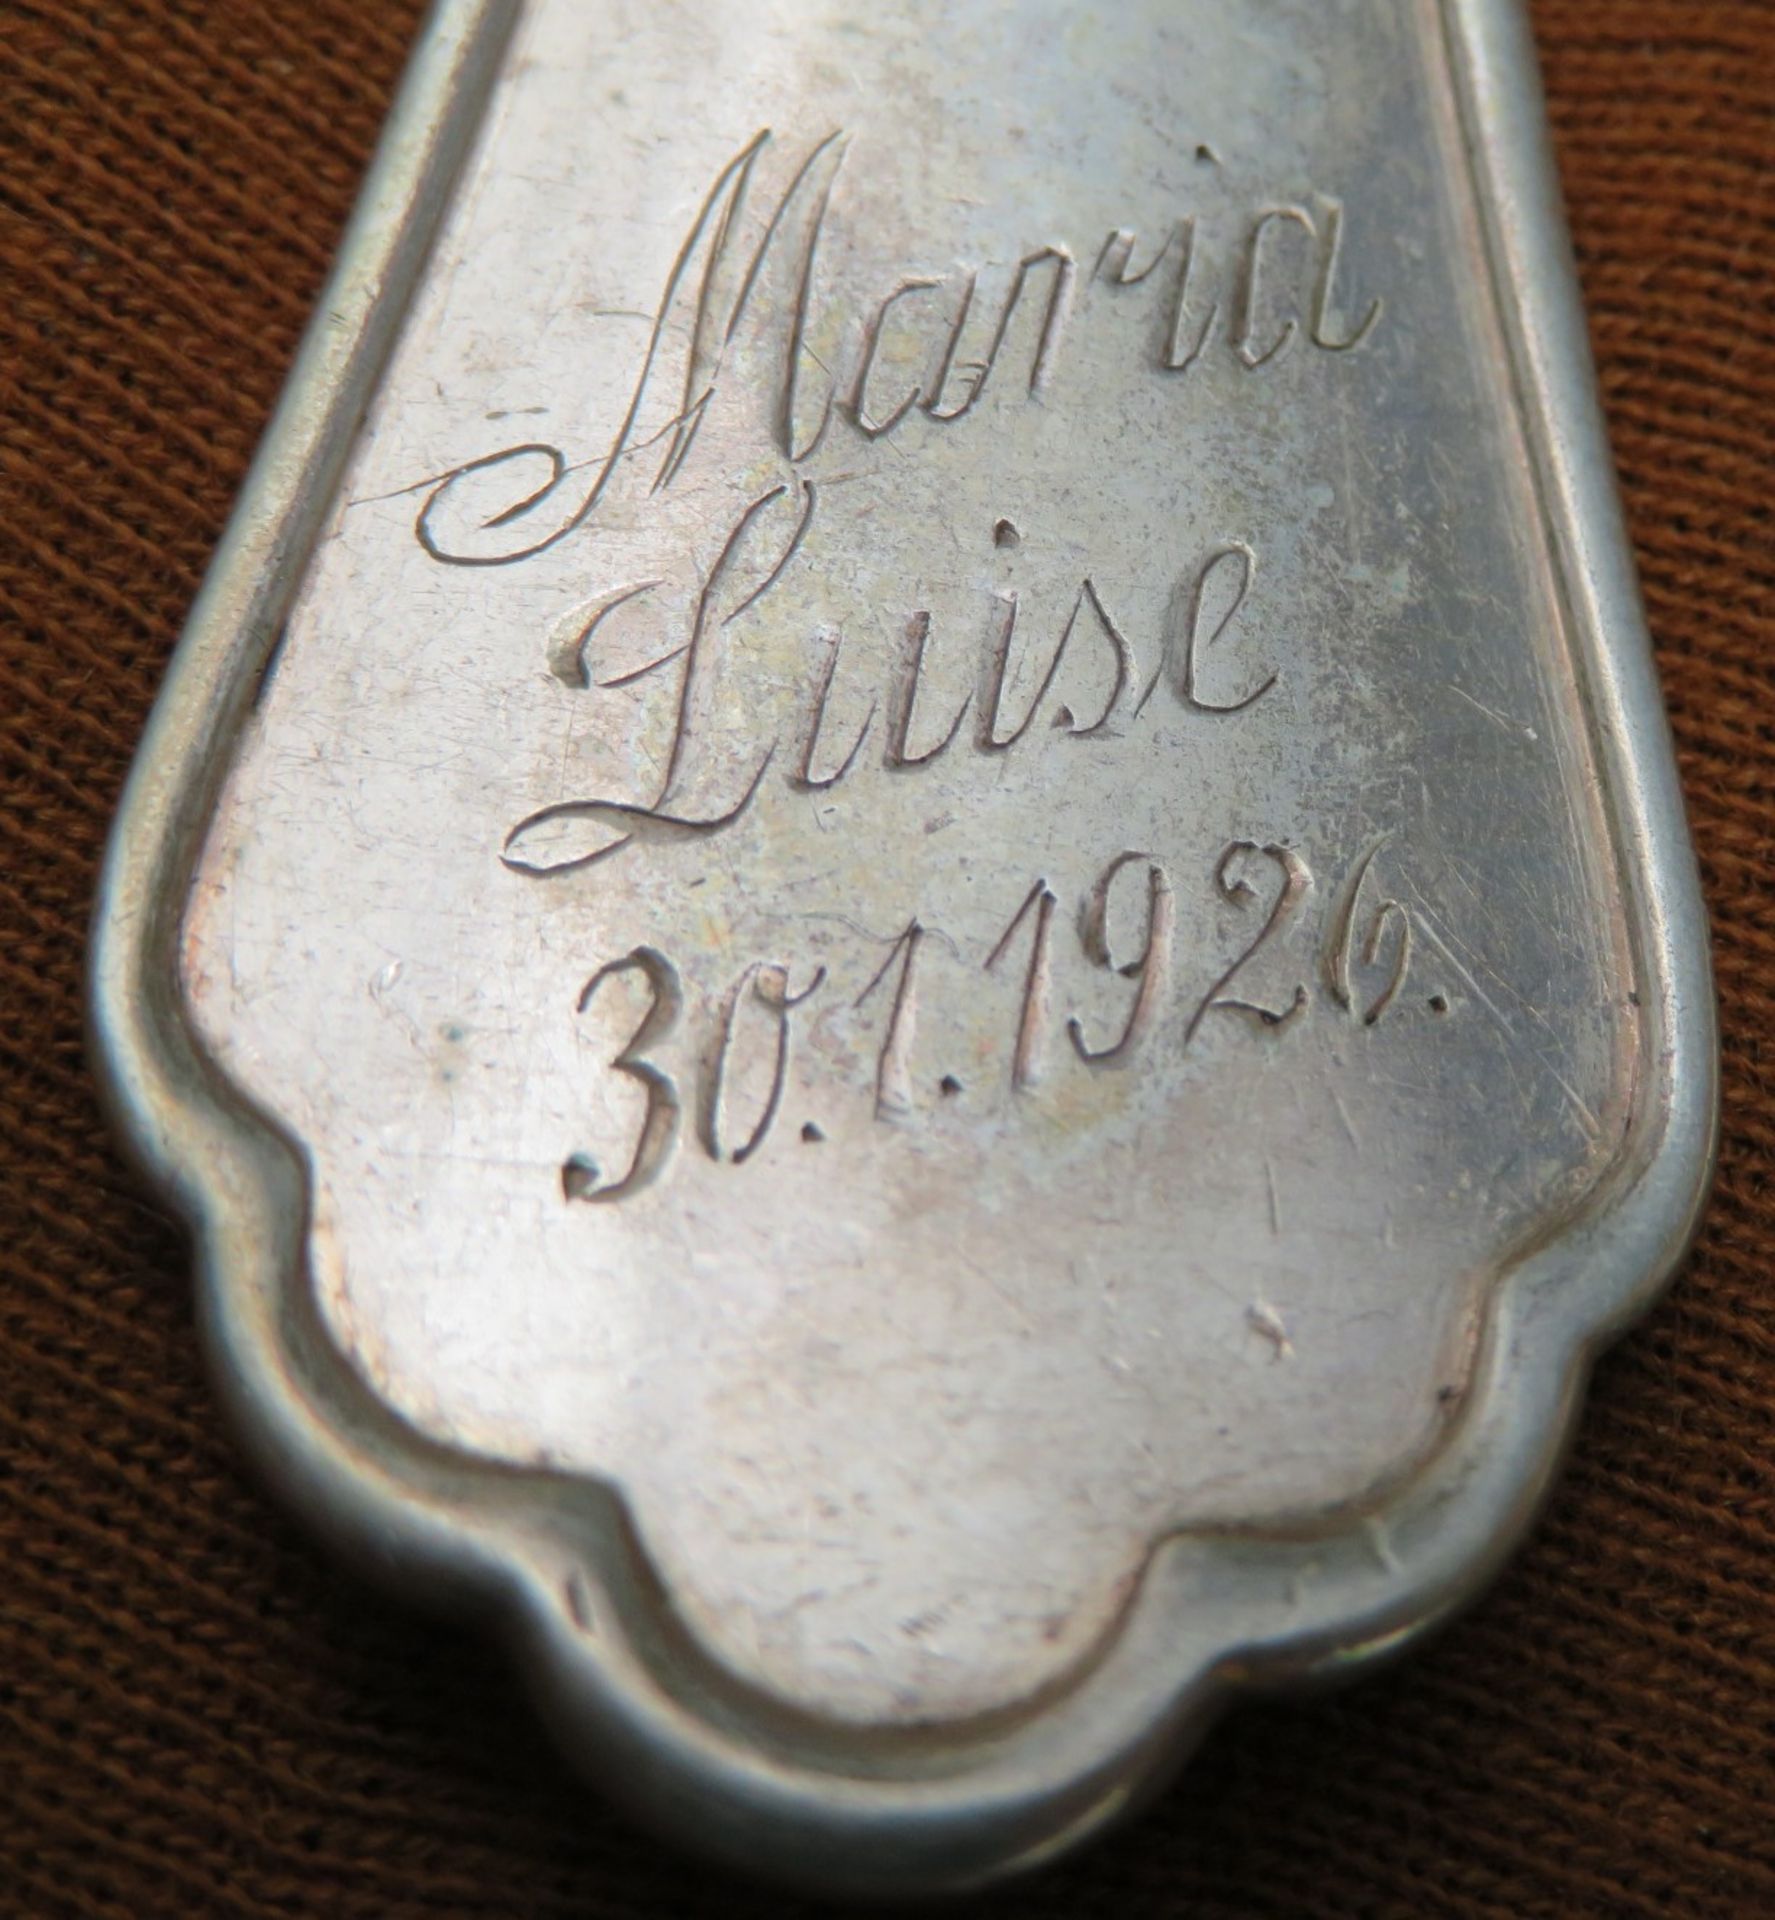 3 teiliges Patenbesteck in Etui, versehen mit Widmung, Silber 800/000, brutto 113 g, Löffel l 17 cm - Image 2 of 2